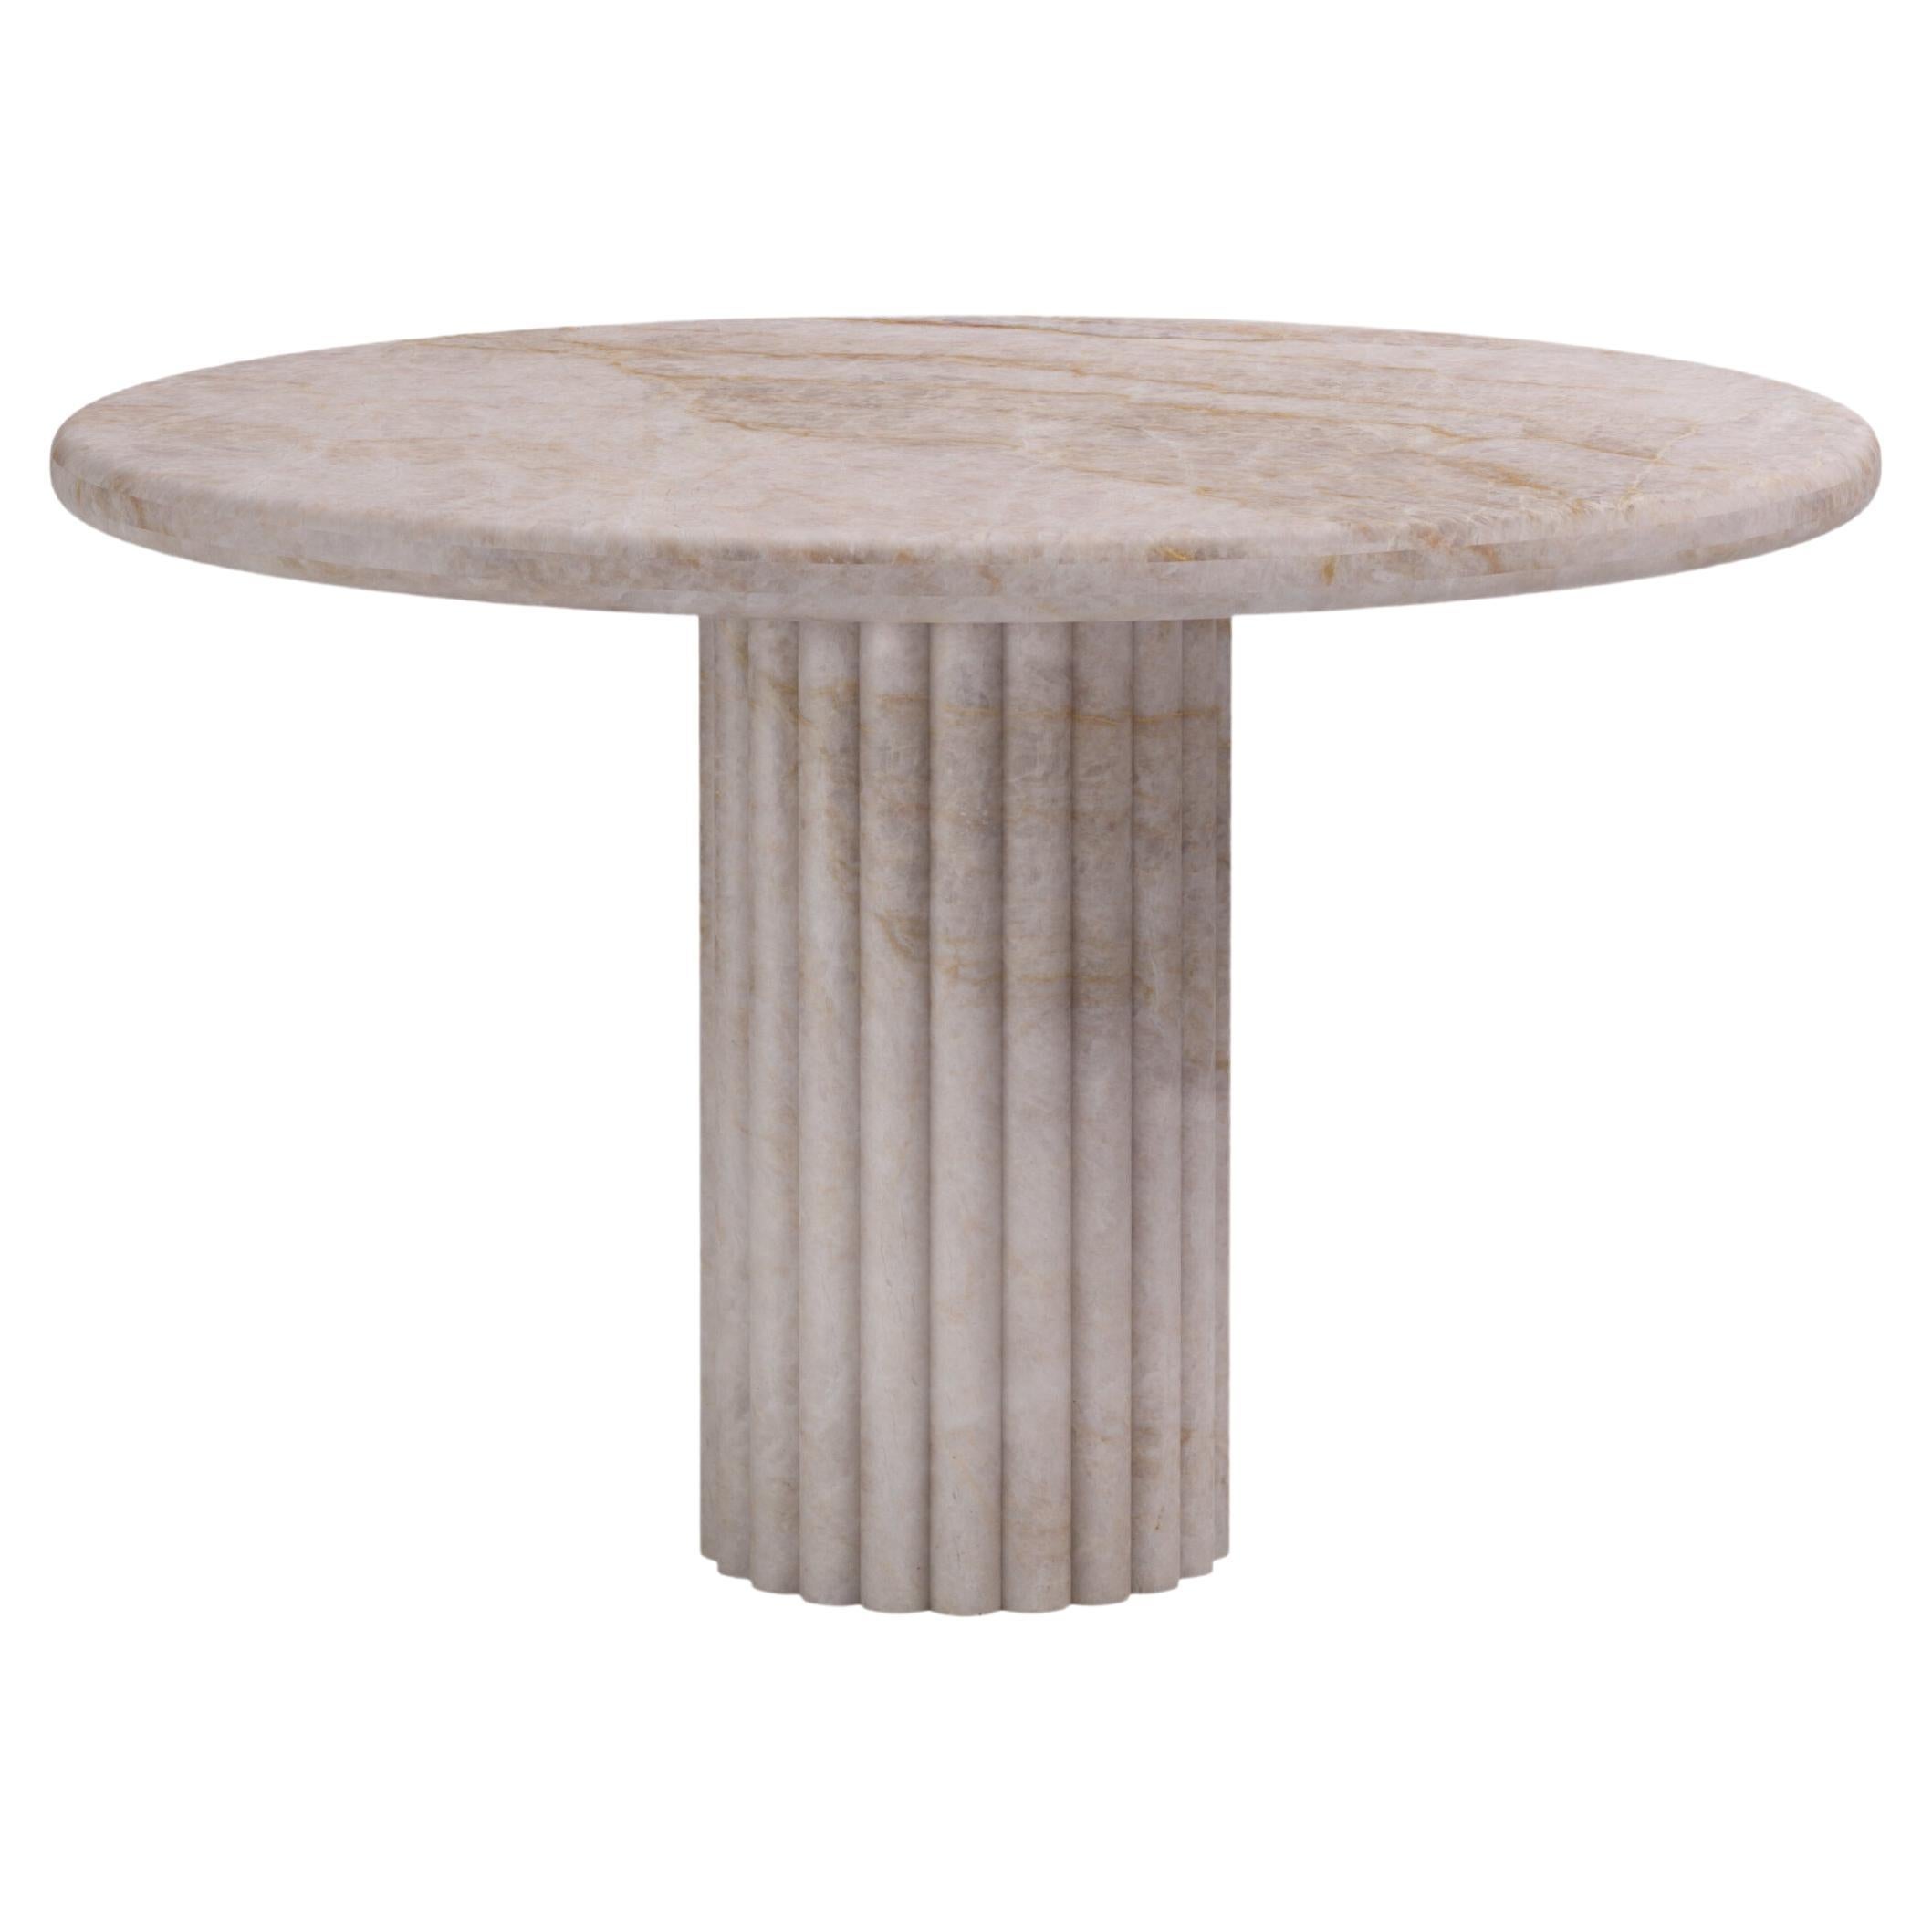 FORM(LA) Fluta Round Dining Table 48”L x 48”W x 30”H Taj Mahal Quartzite